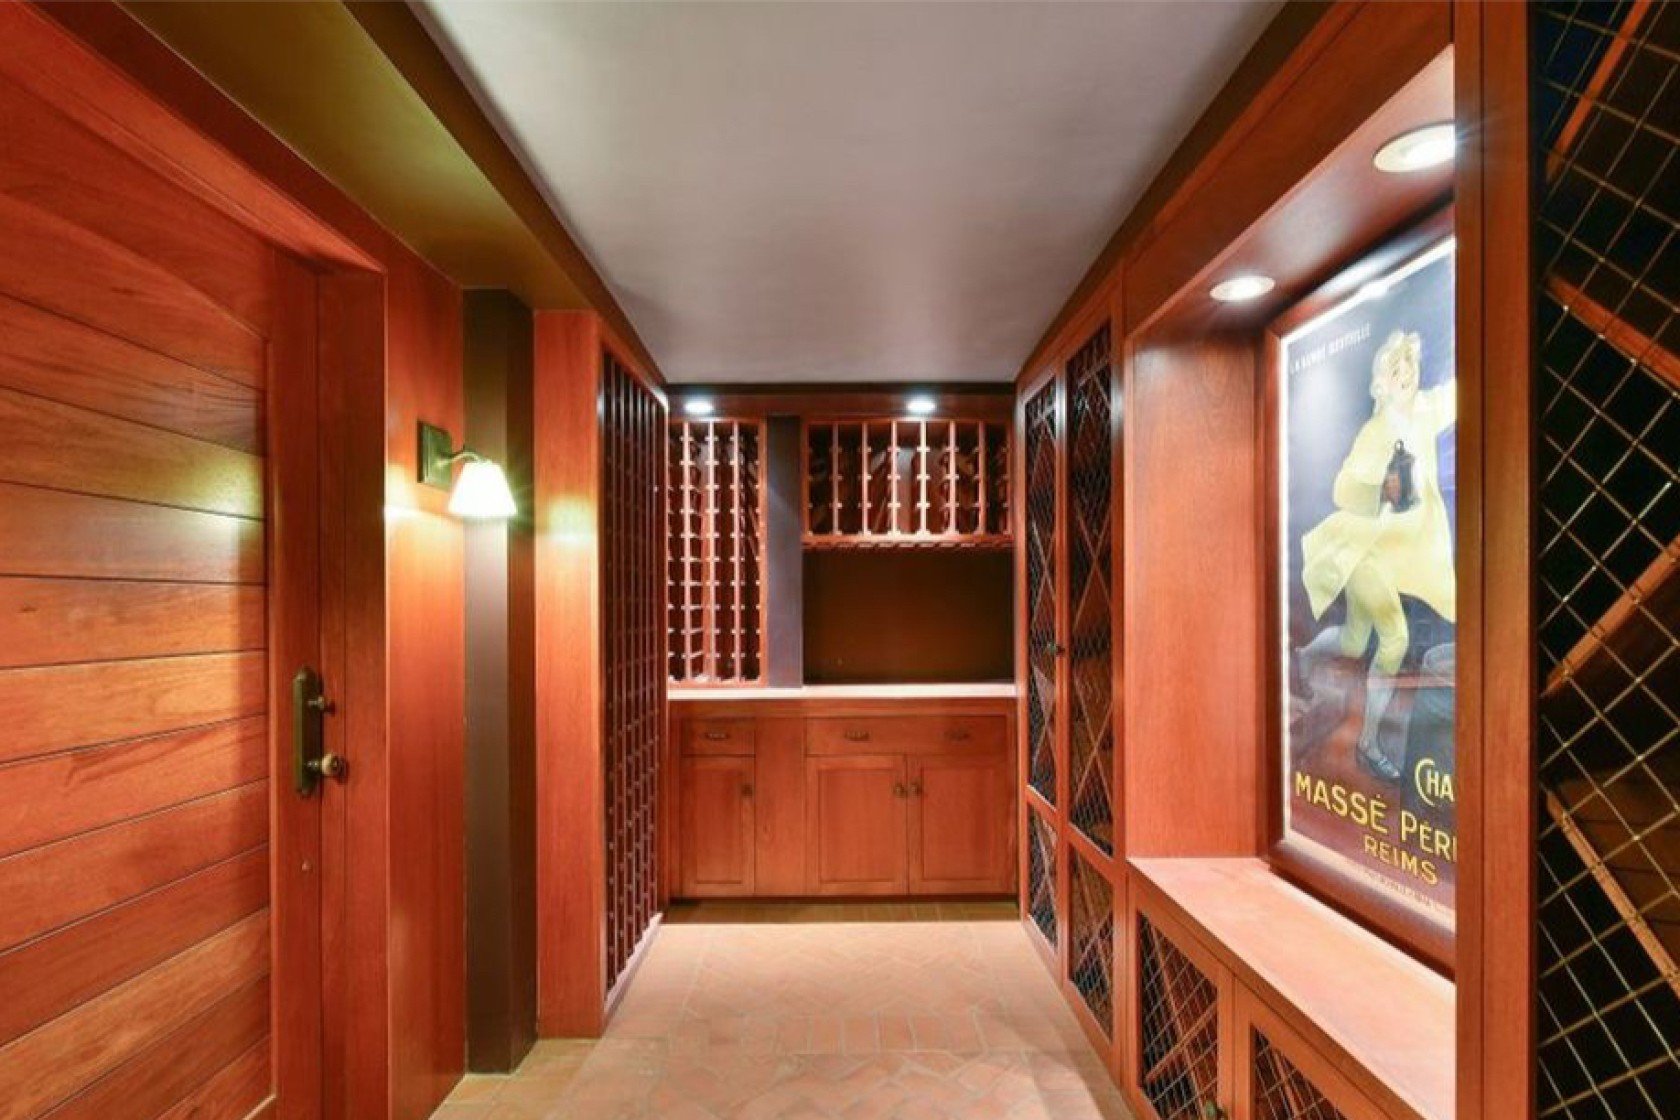 Джулия Робертс купила дом за 8,3 миллионов долларов, и вот как он выглядит - фото 469979